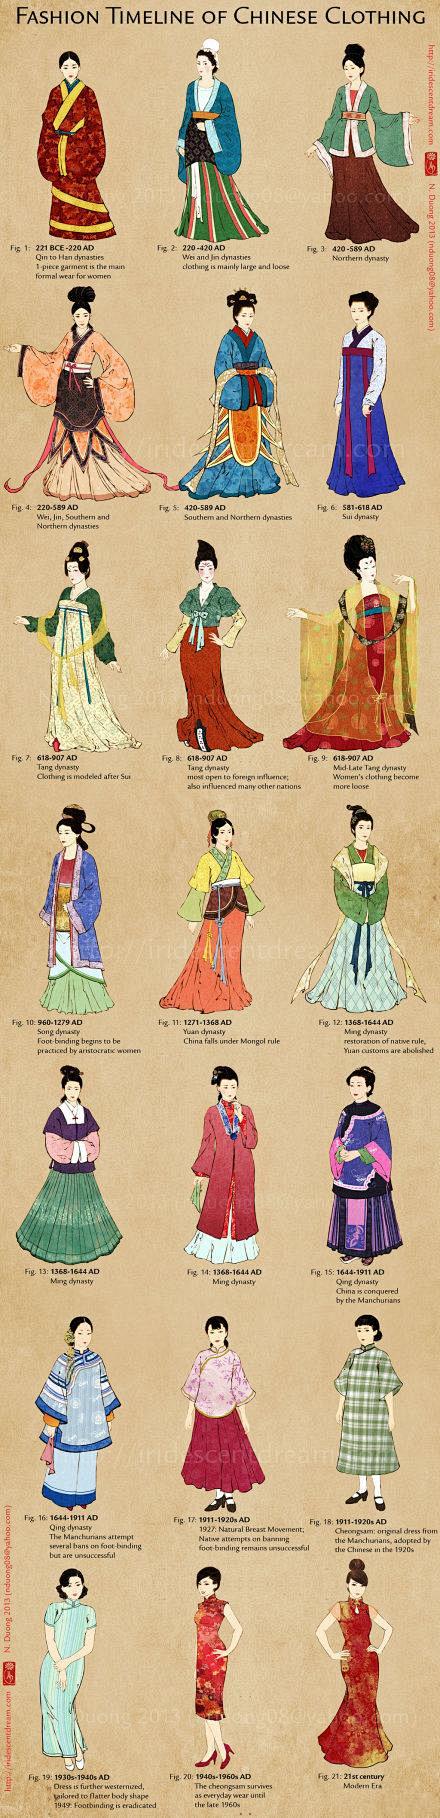 中国服饰演变汉服历史以来一直延续至明末清初汉人被强制剃发和易服